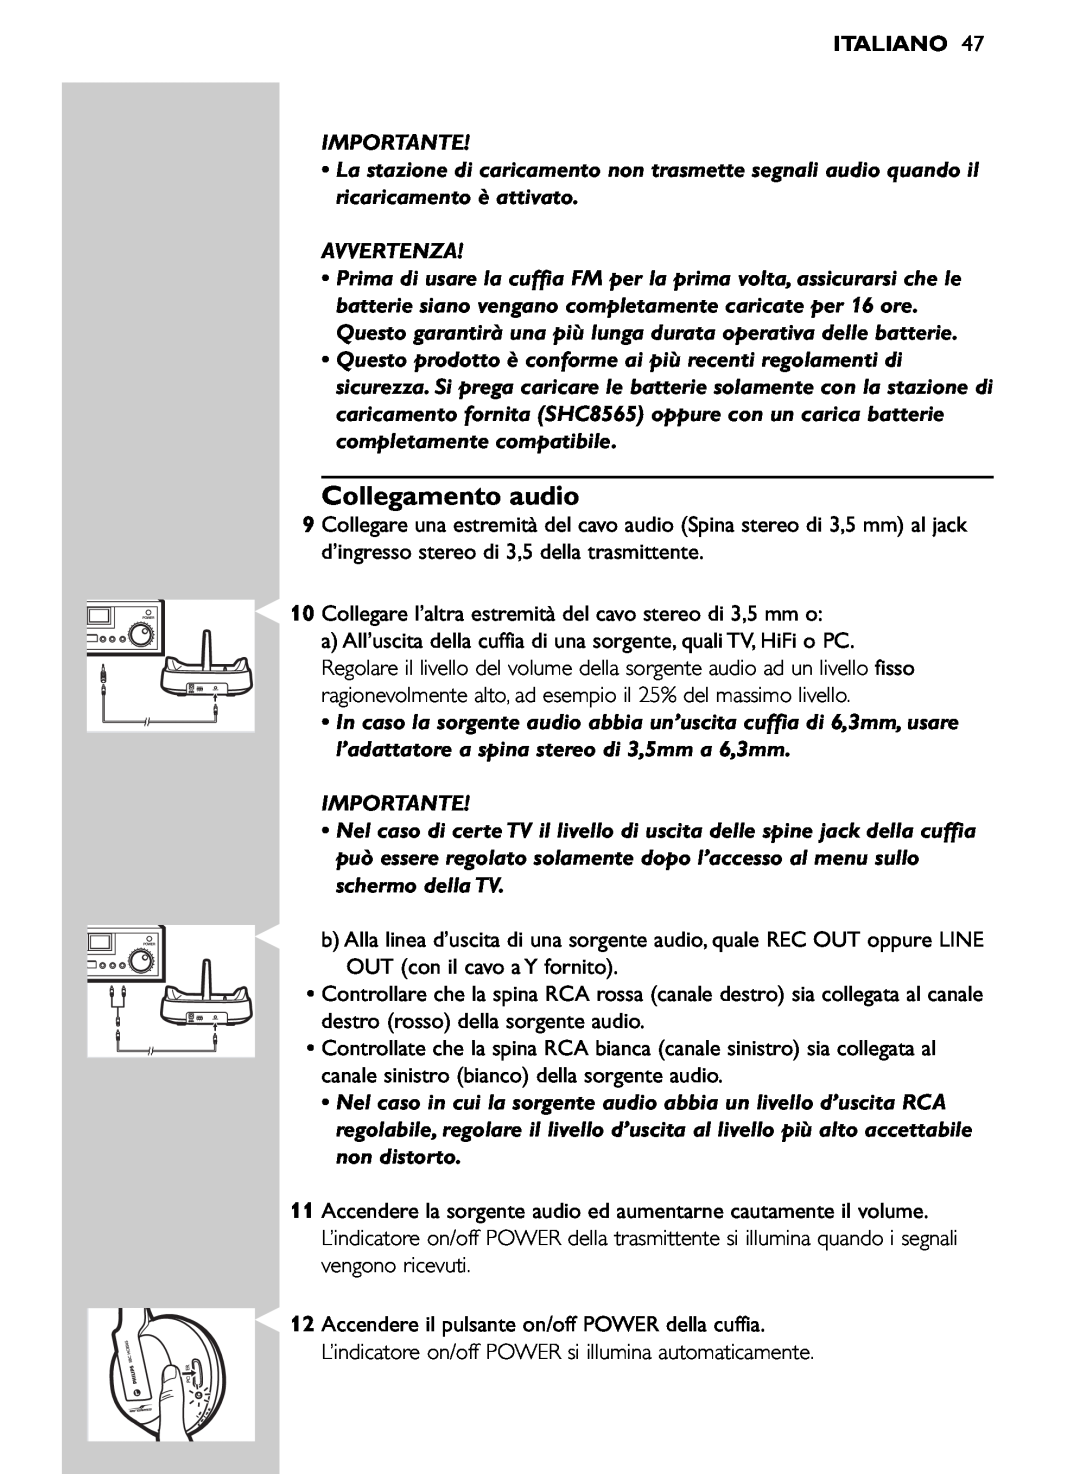 Philips SHC8565/00 manual Collegamento audio, Italiano, Importante, Avvertenza 